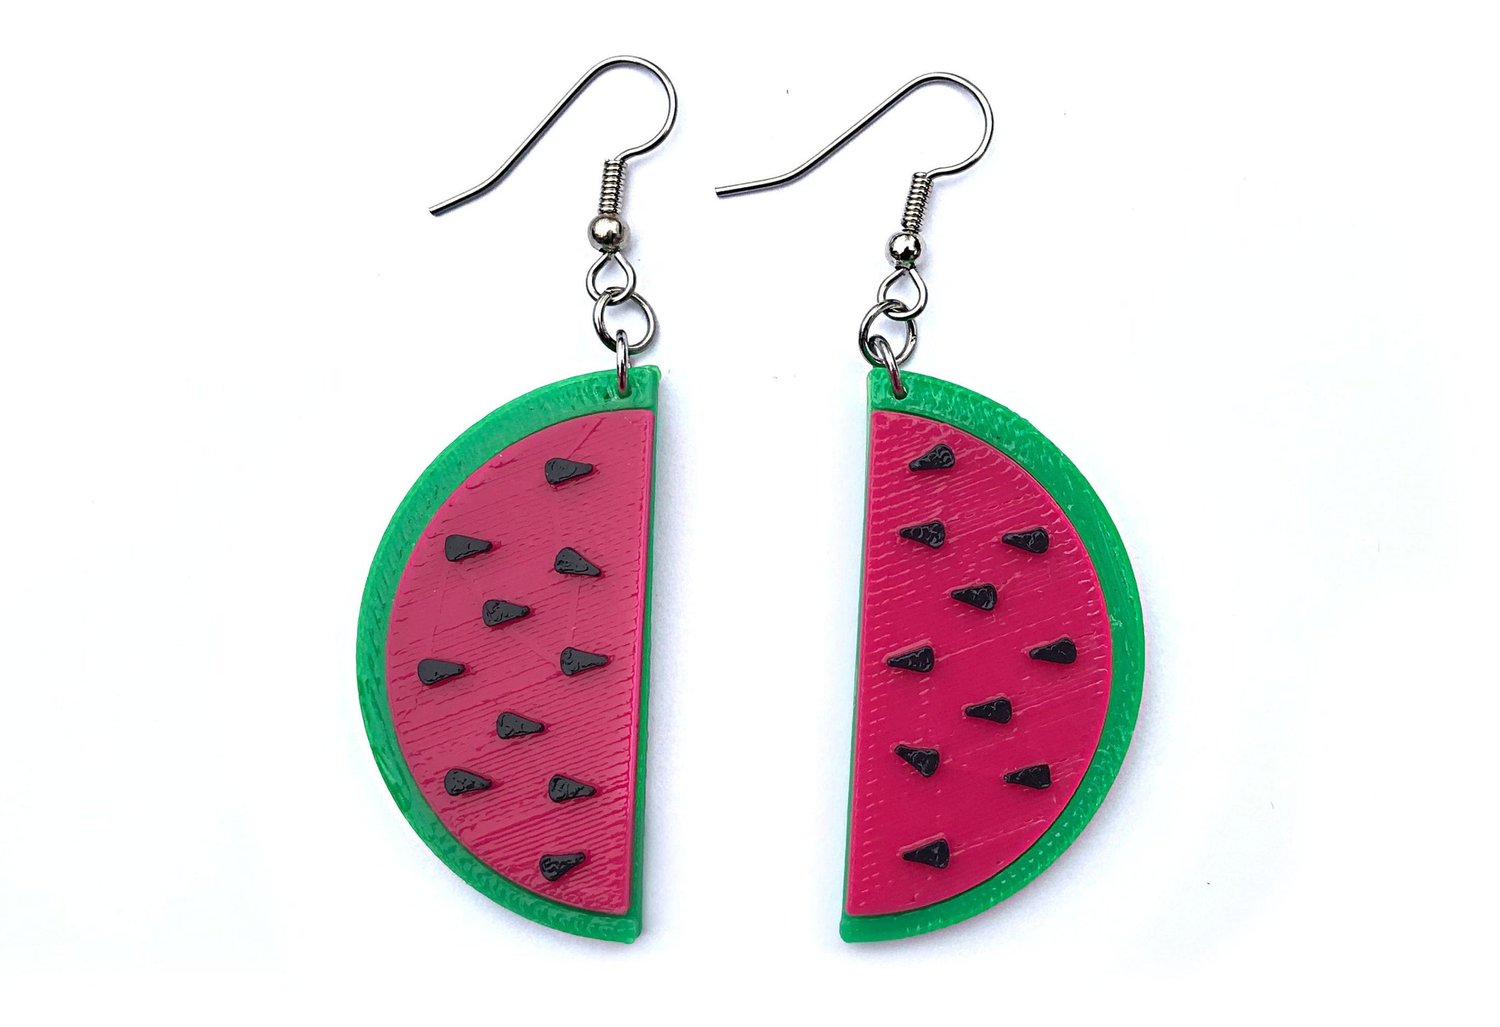 Fruit Stud Earrings Watermelon Earrings